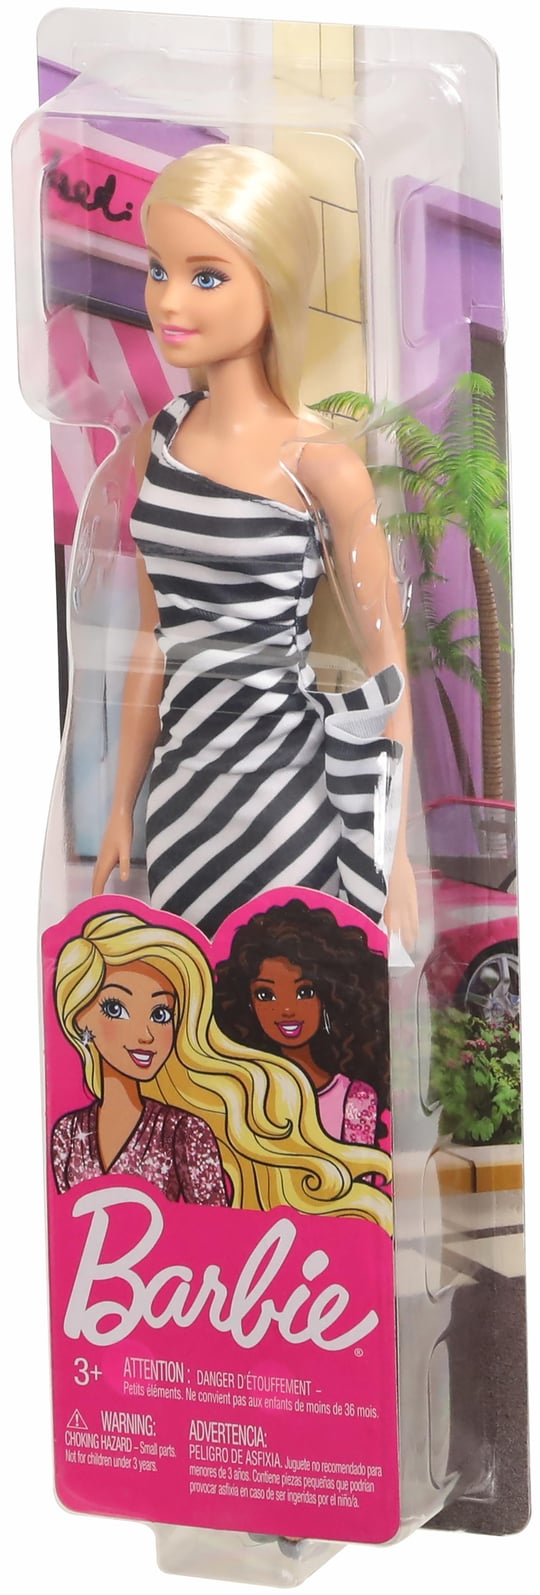 Tela para pintura de 15x20 cm, Barbie com глиттером e pedrinhas, em плёнке